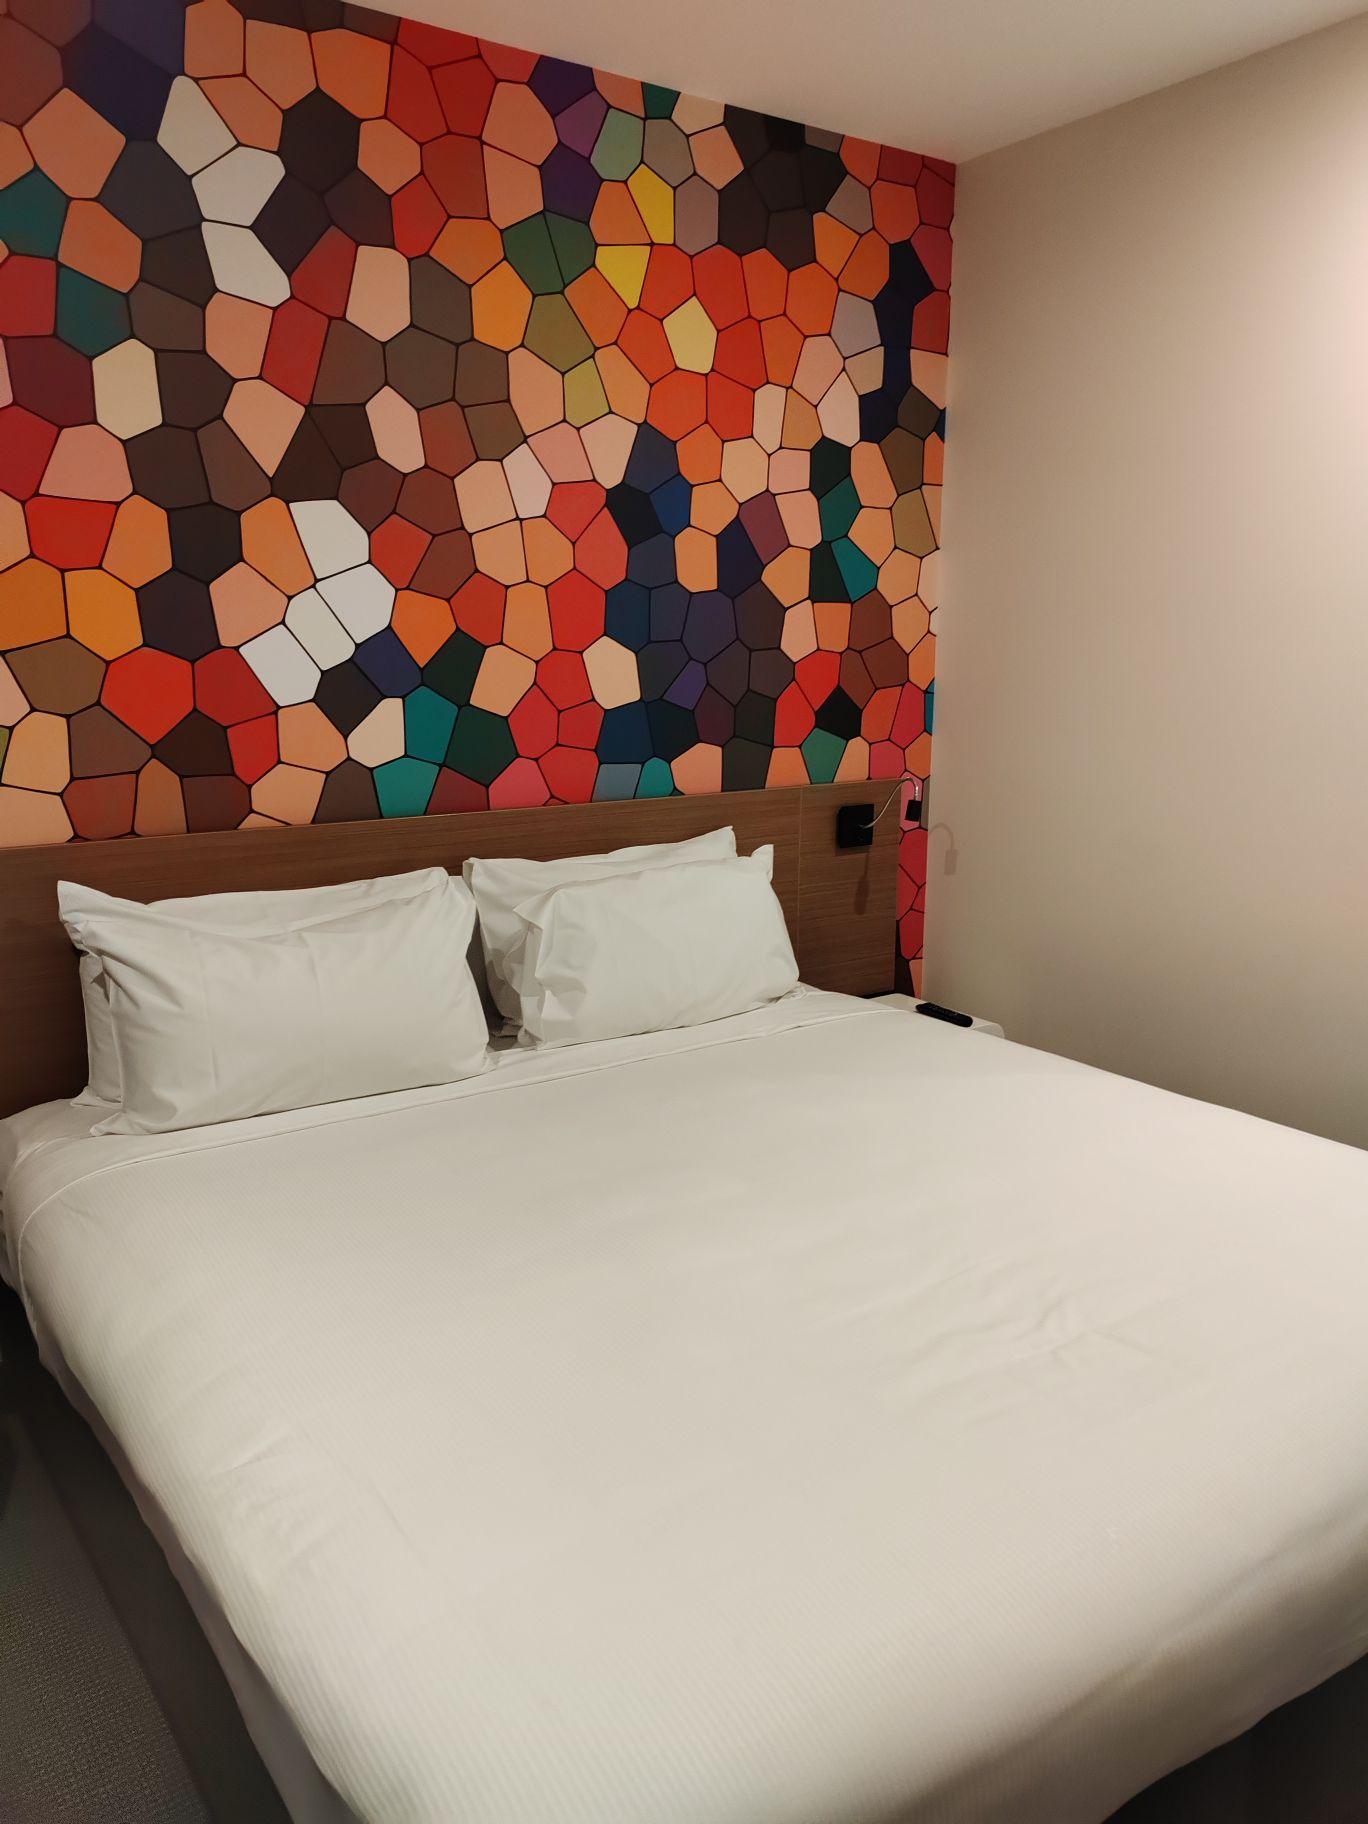 澳洲之行住了好几个酒店，这家还是挺不错的，我们的房间位置恰好能看得见对面的摩天轮，晚上特别漂亮。床也